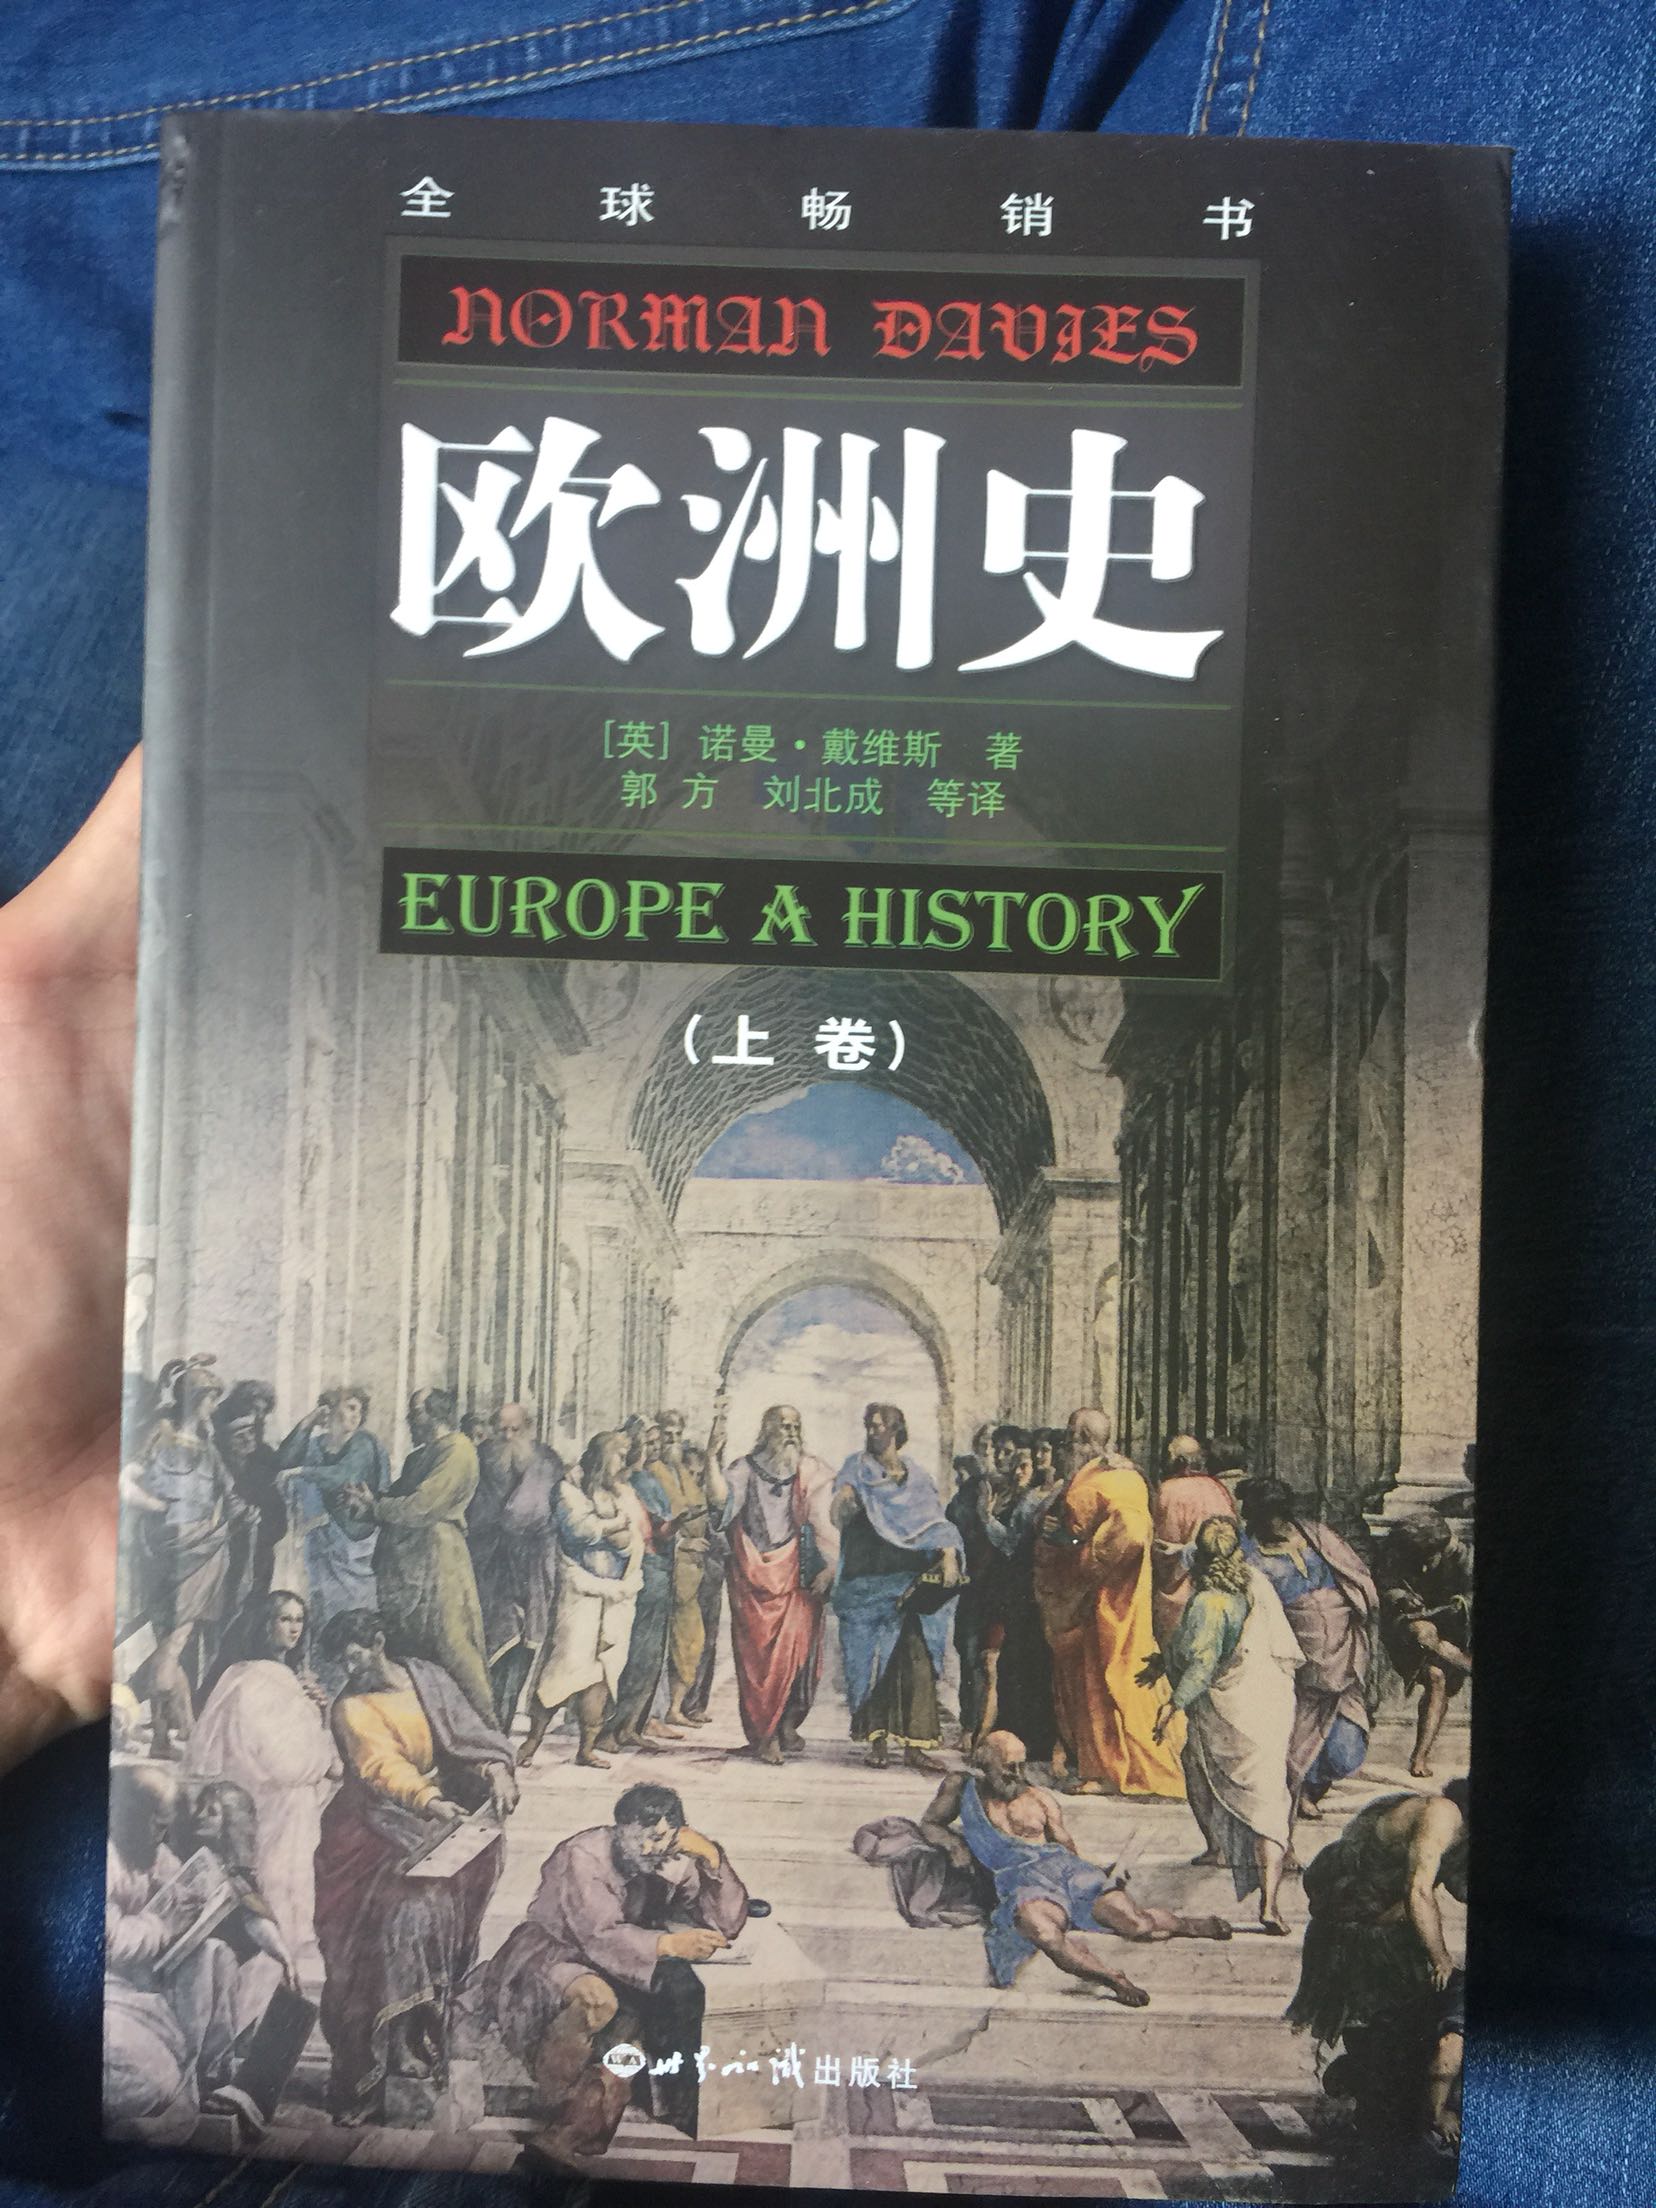 书的纸质一般，很粗糙，不像是正版书。冲着对欧洲感兴趣的历史，内容我给三颗星